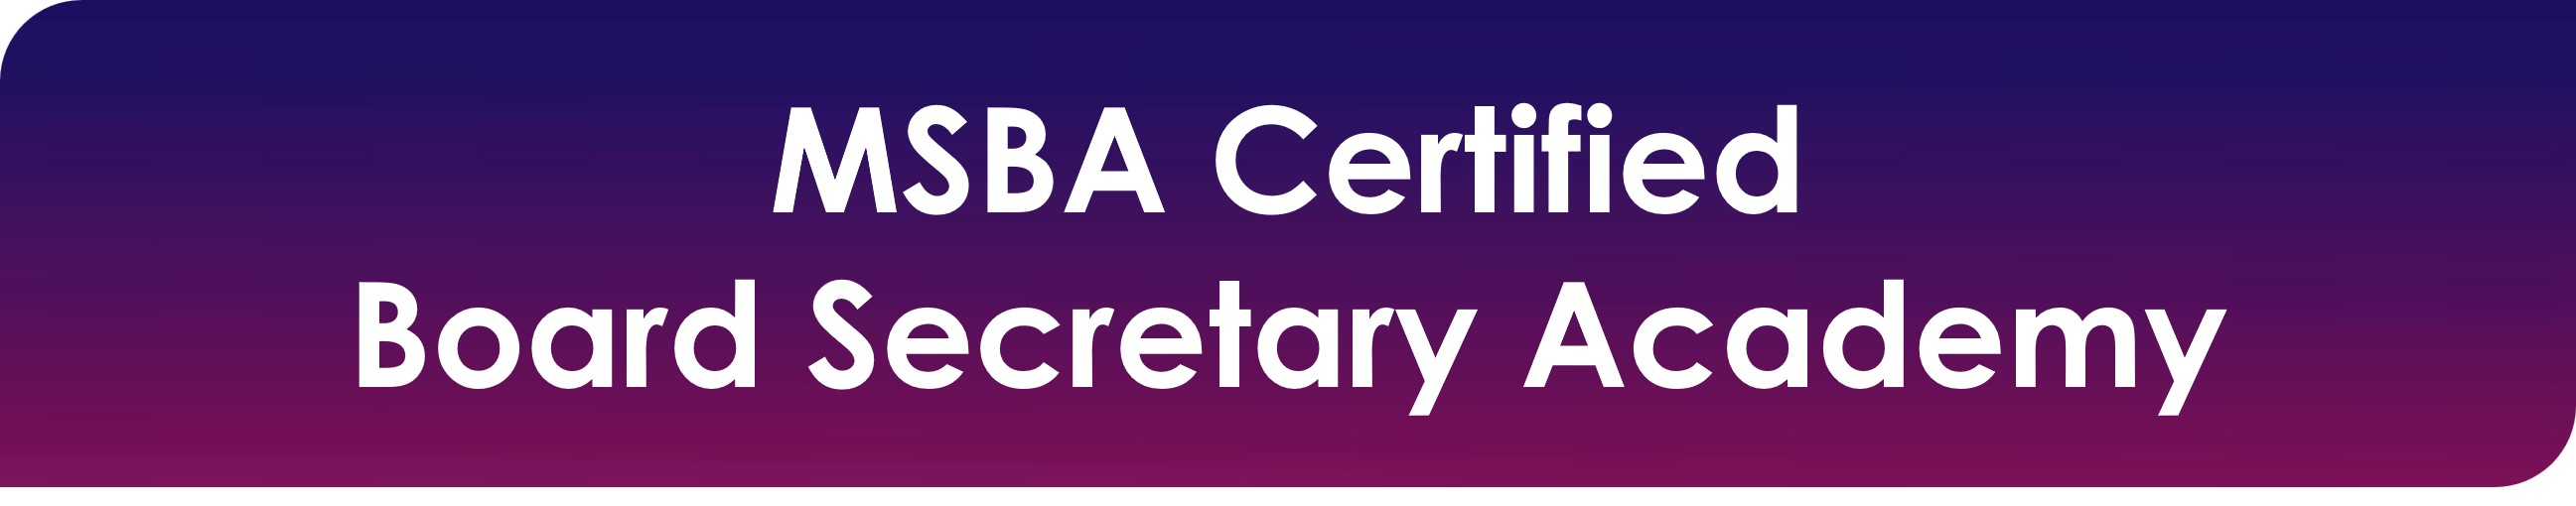 MSBA Certified Board Secretary Academy